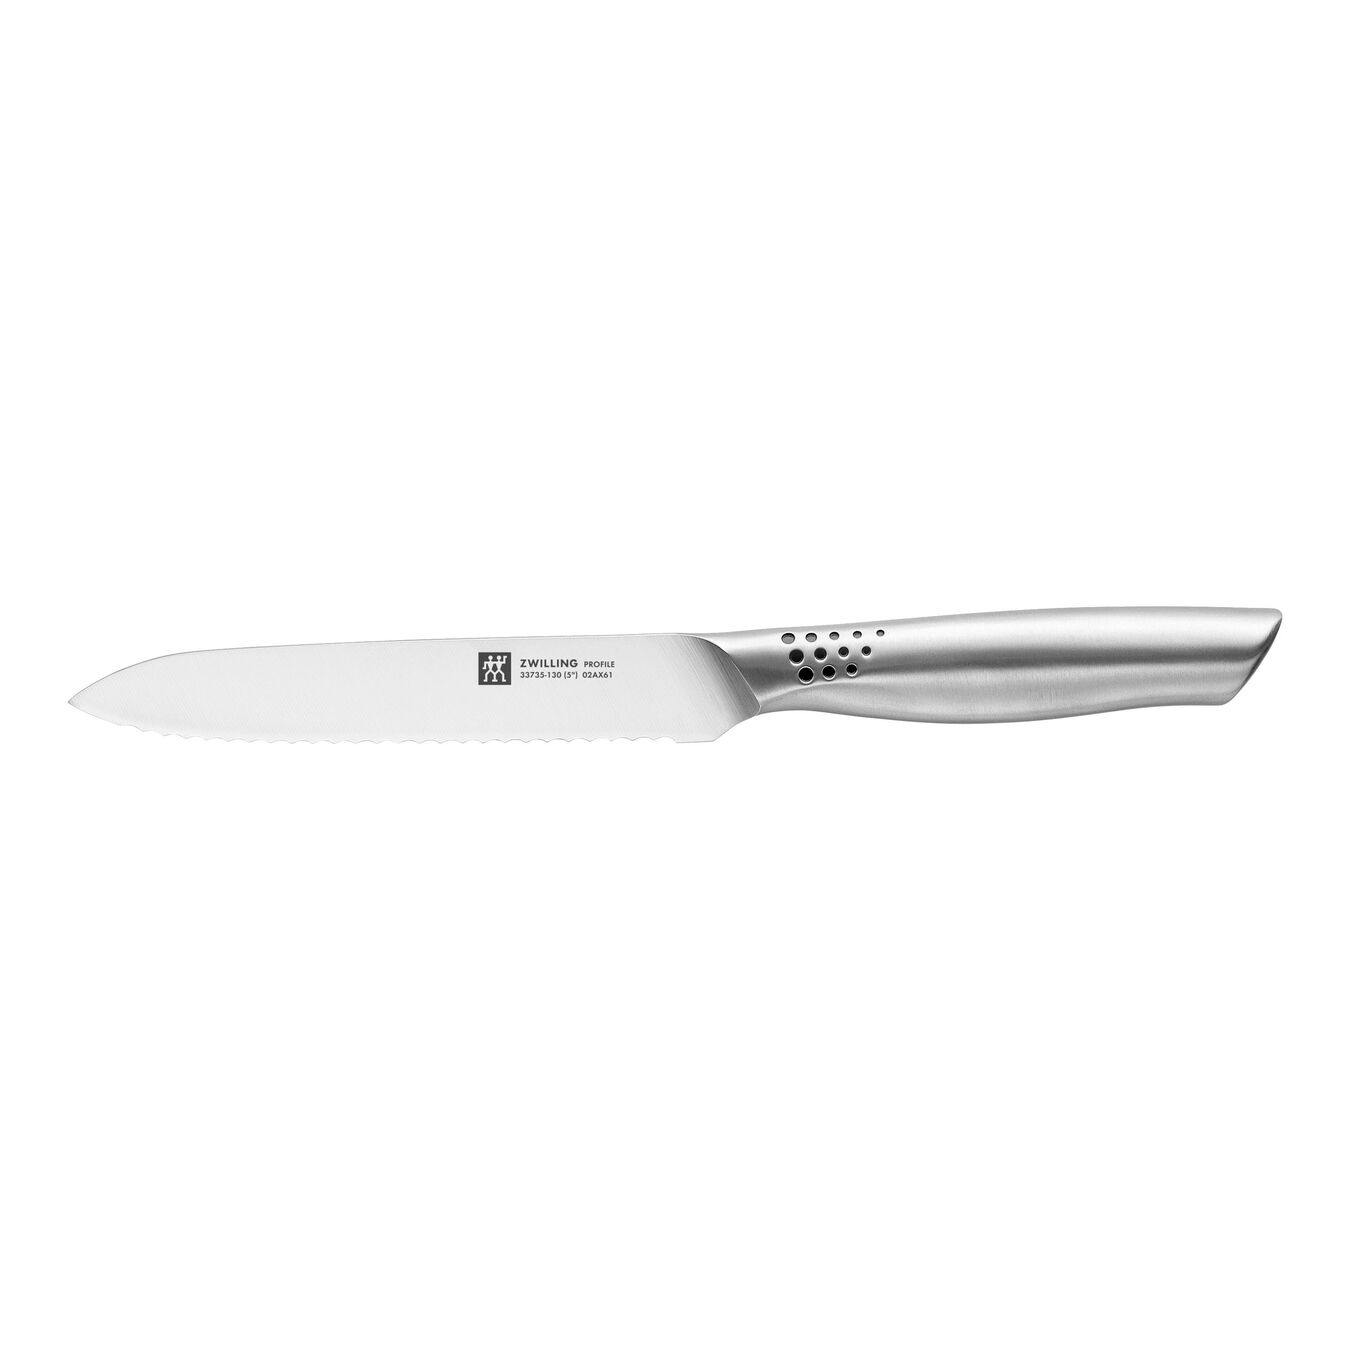 Couteau universel 13 cm, Argent,,large 1